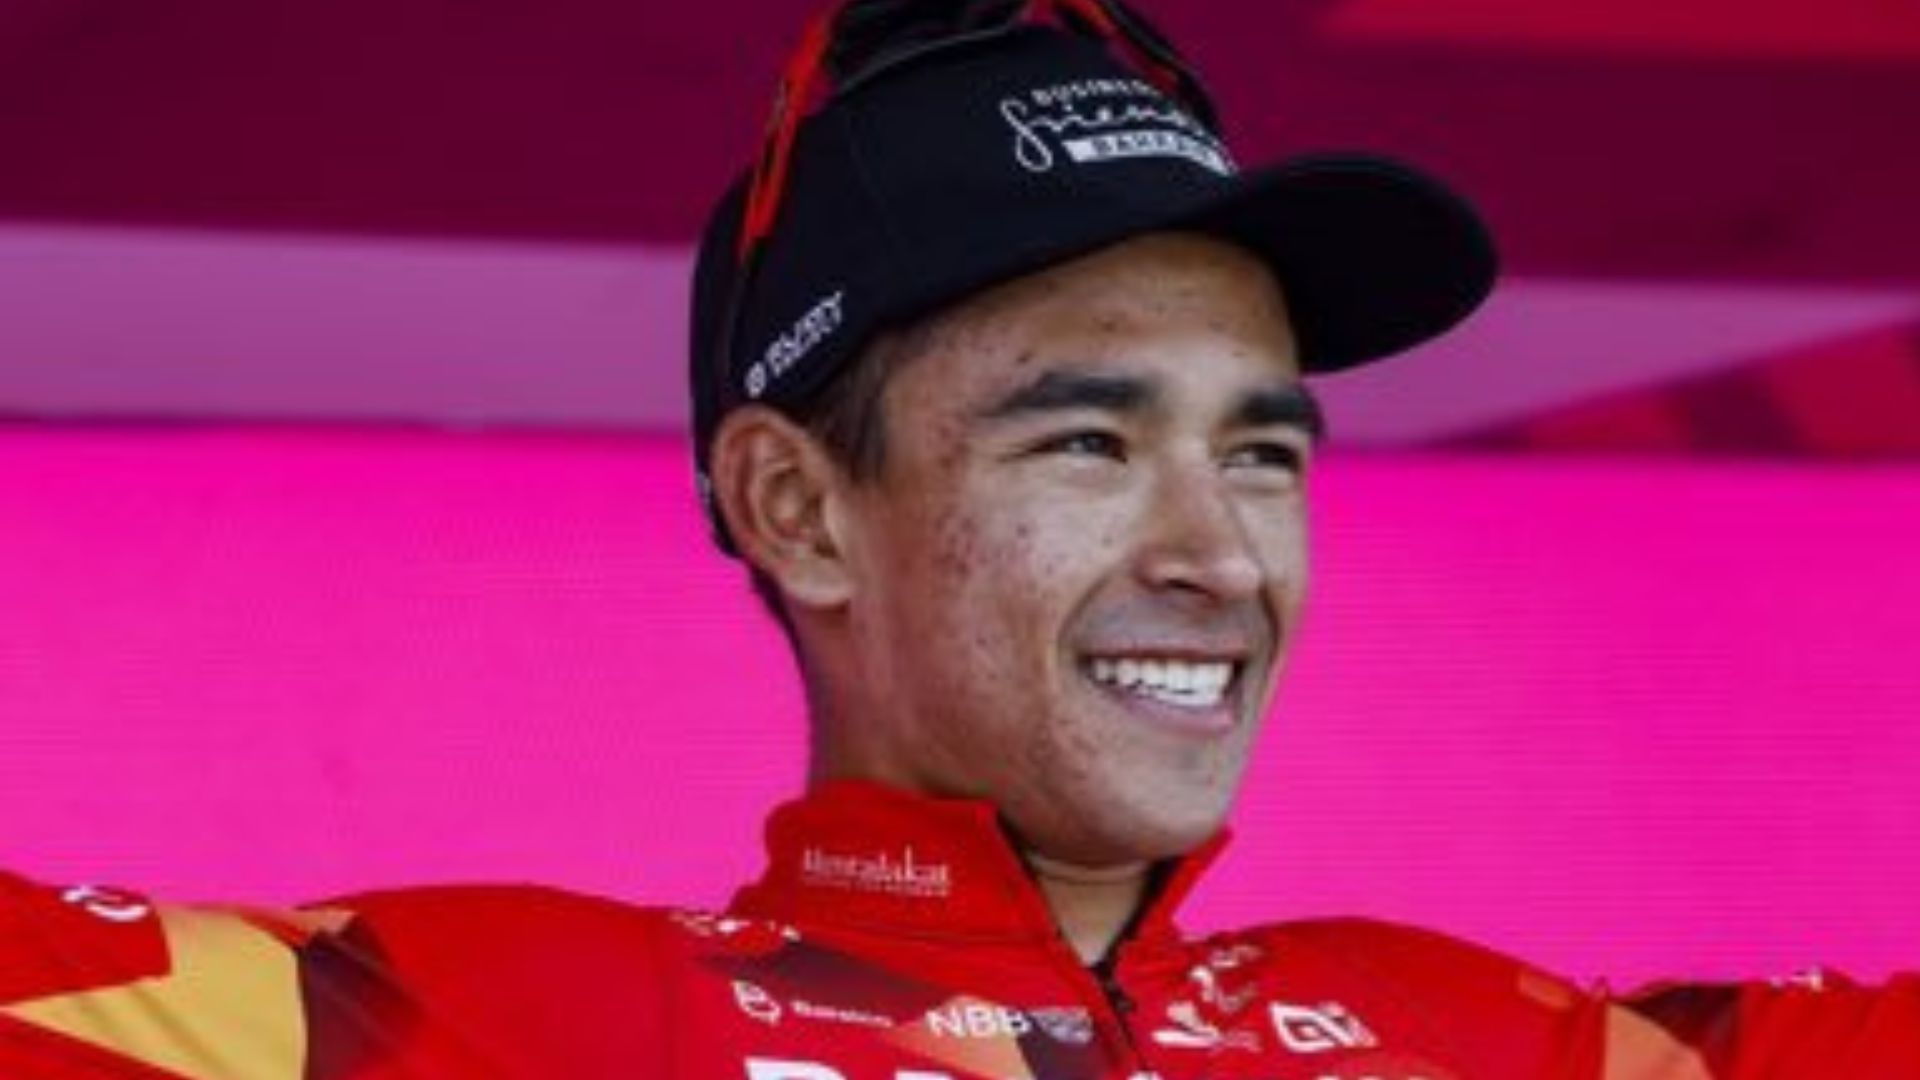 El colombiano Santiago Buitrago fue confirmado para correr la Vuelta a España 2022